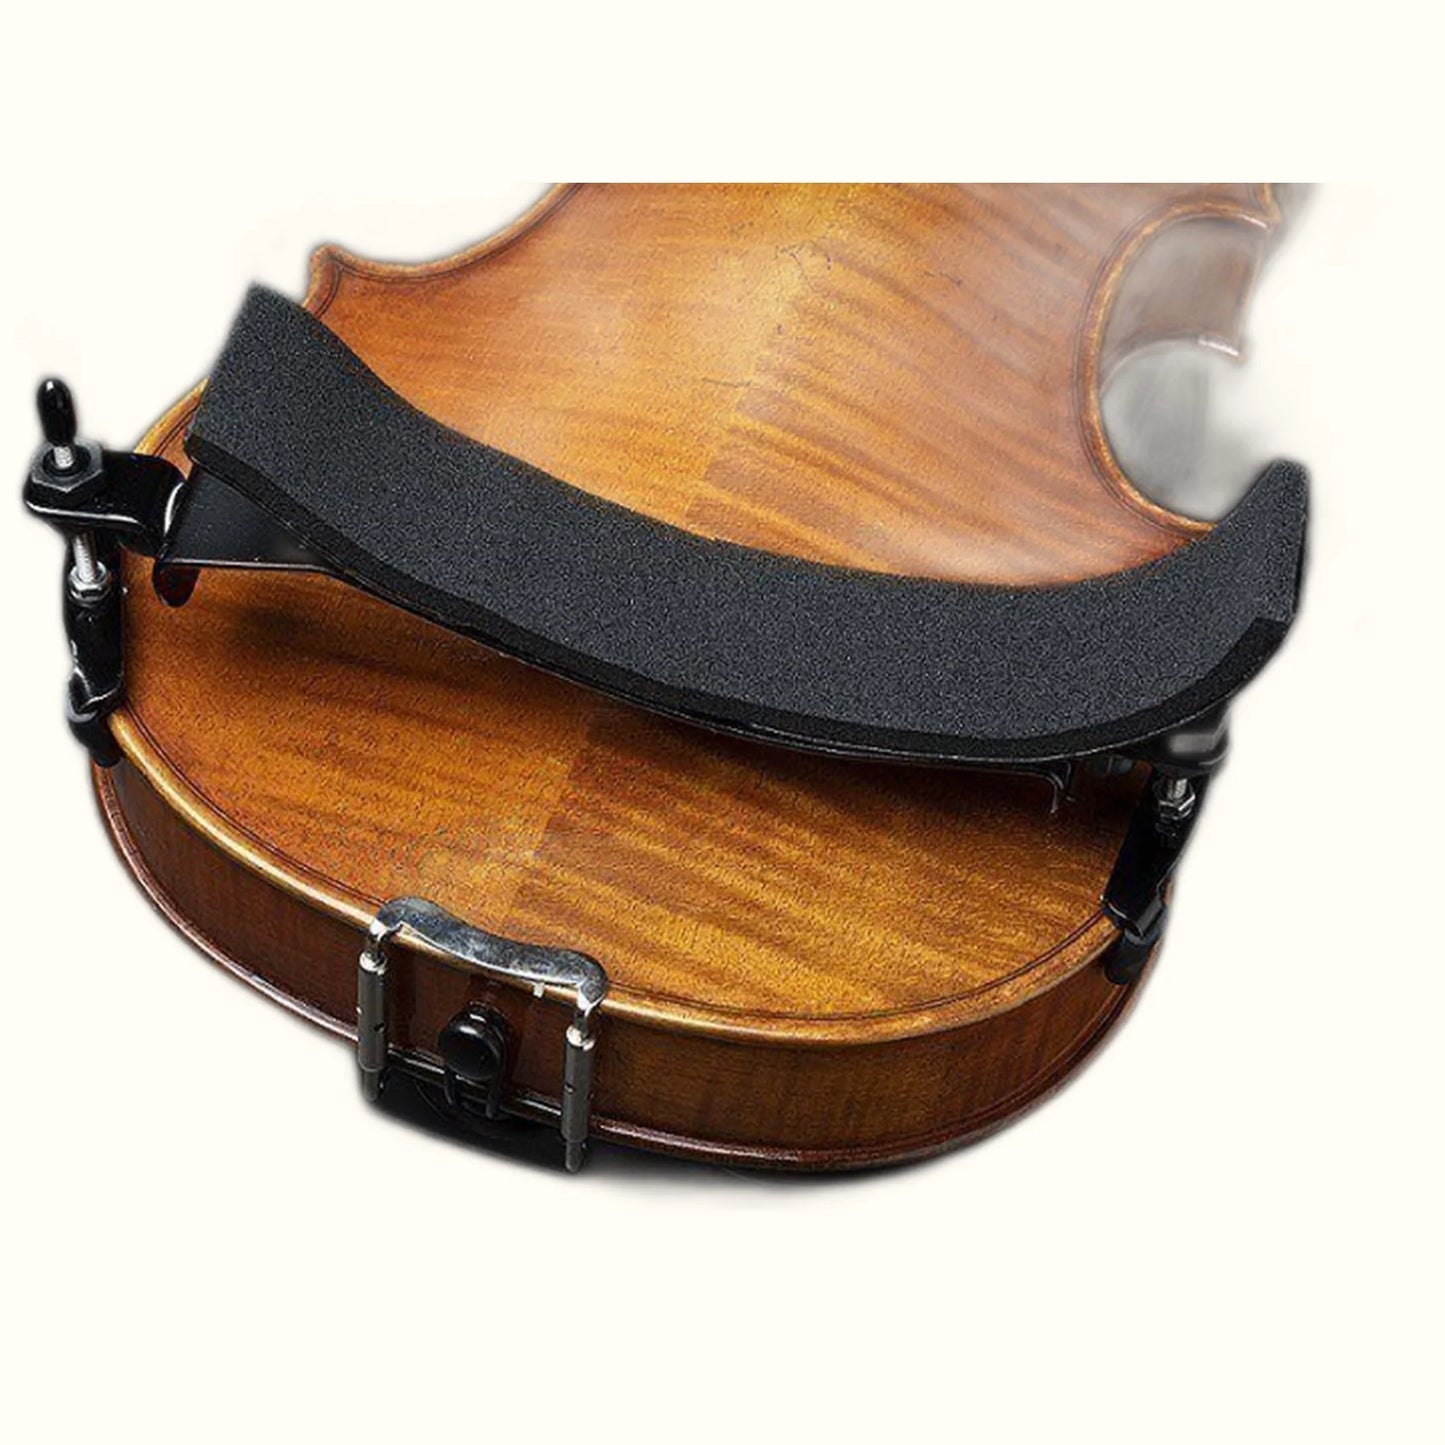 Bon Musica 1/2 Violin Shoulder Rest